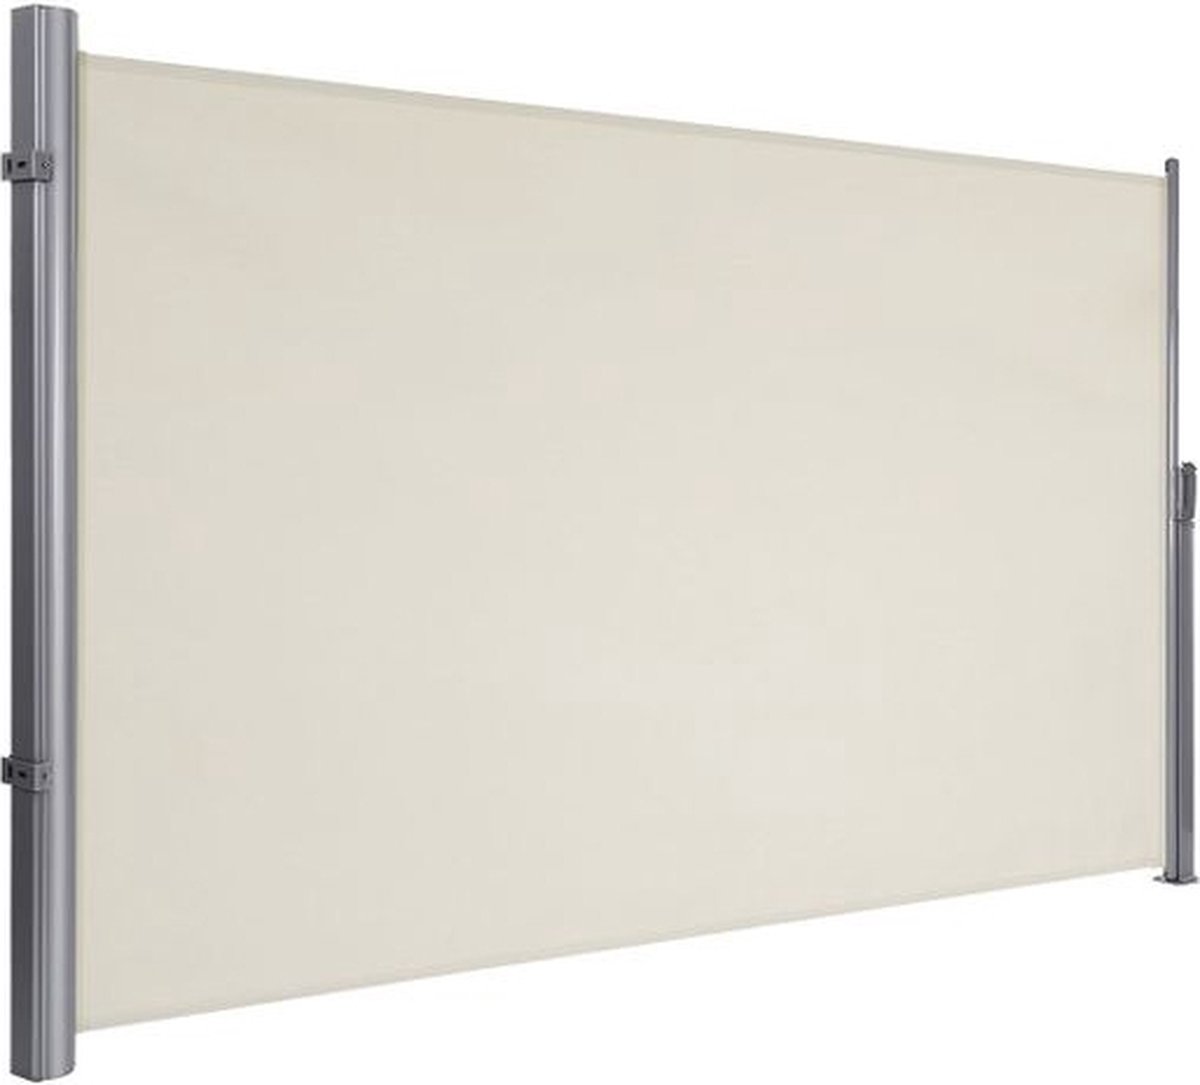 IN.HOMEXL Loralee- Windschermen - Zijluifel - Tuinscherm - Uittrekbaar Windscherm- Aluminium - 200 x 300 cm - Beige